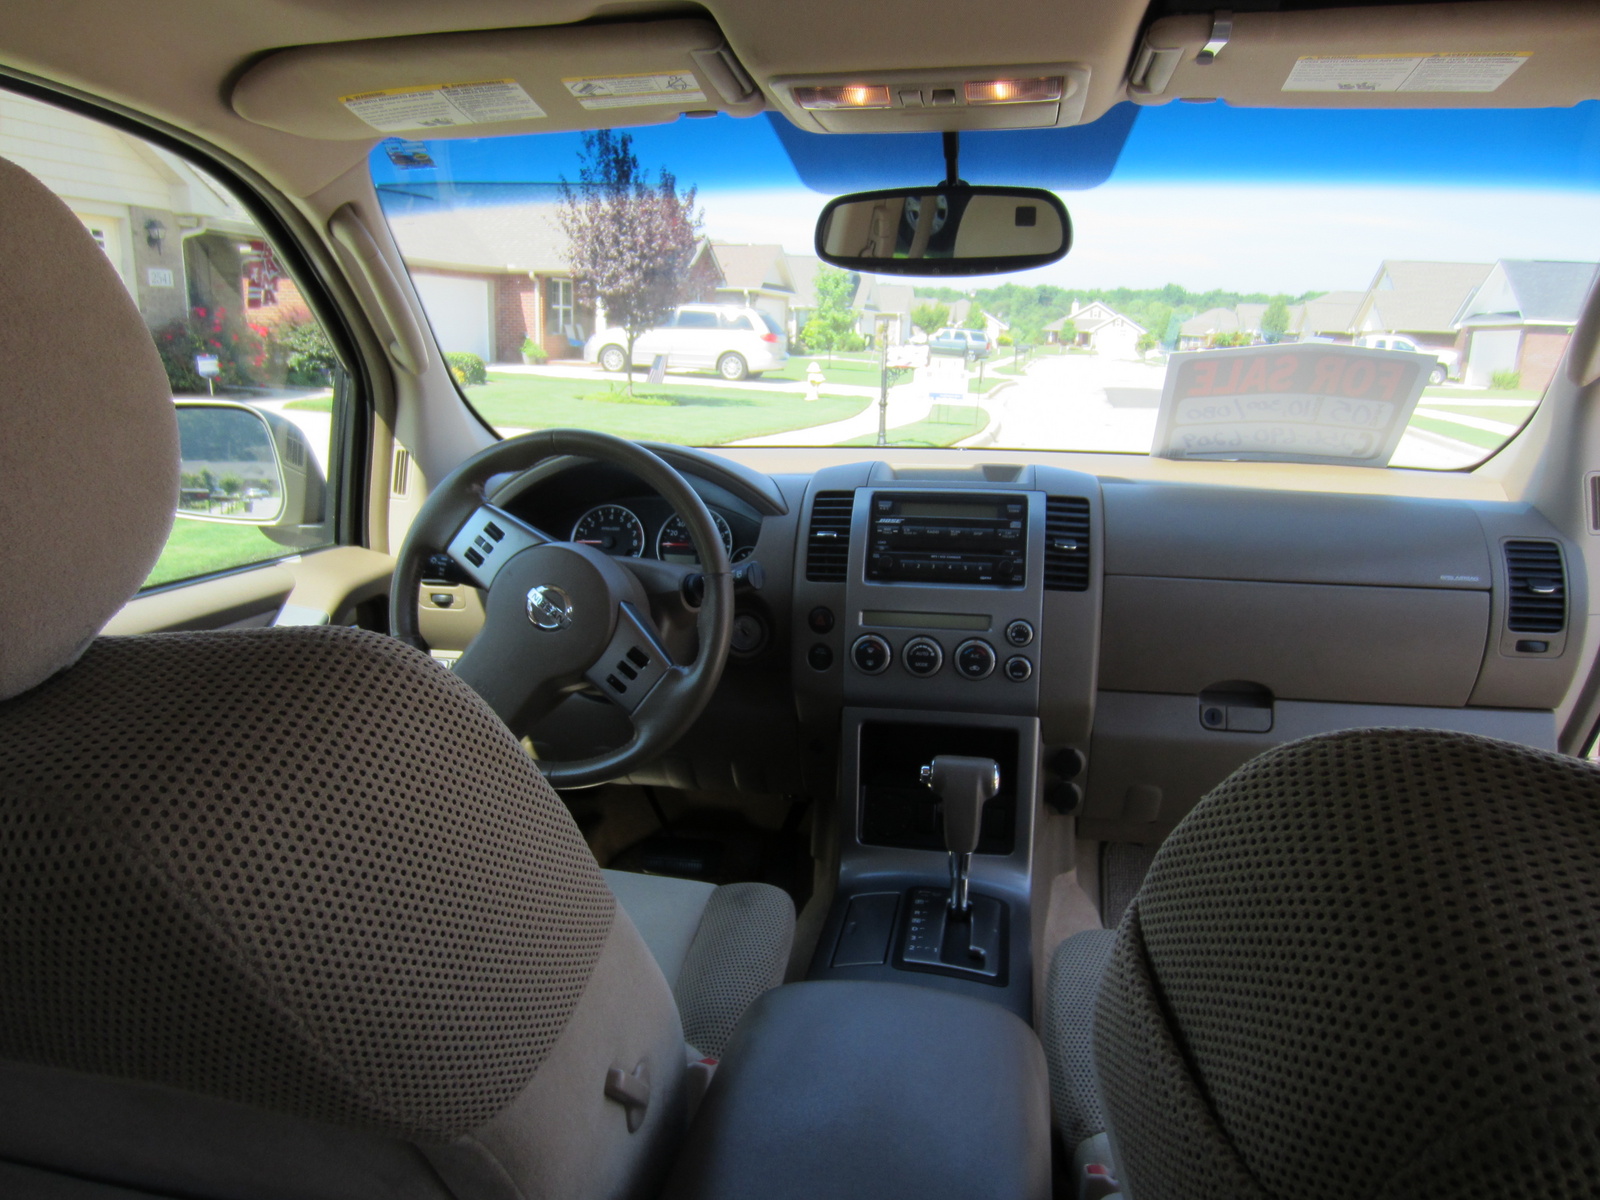 2005 Nissan pathfinder se interior #8